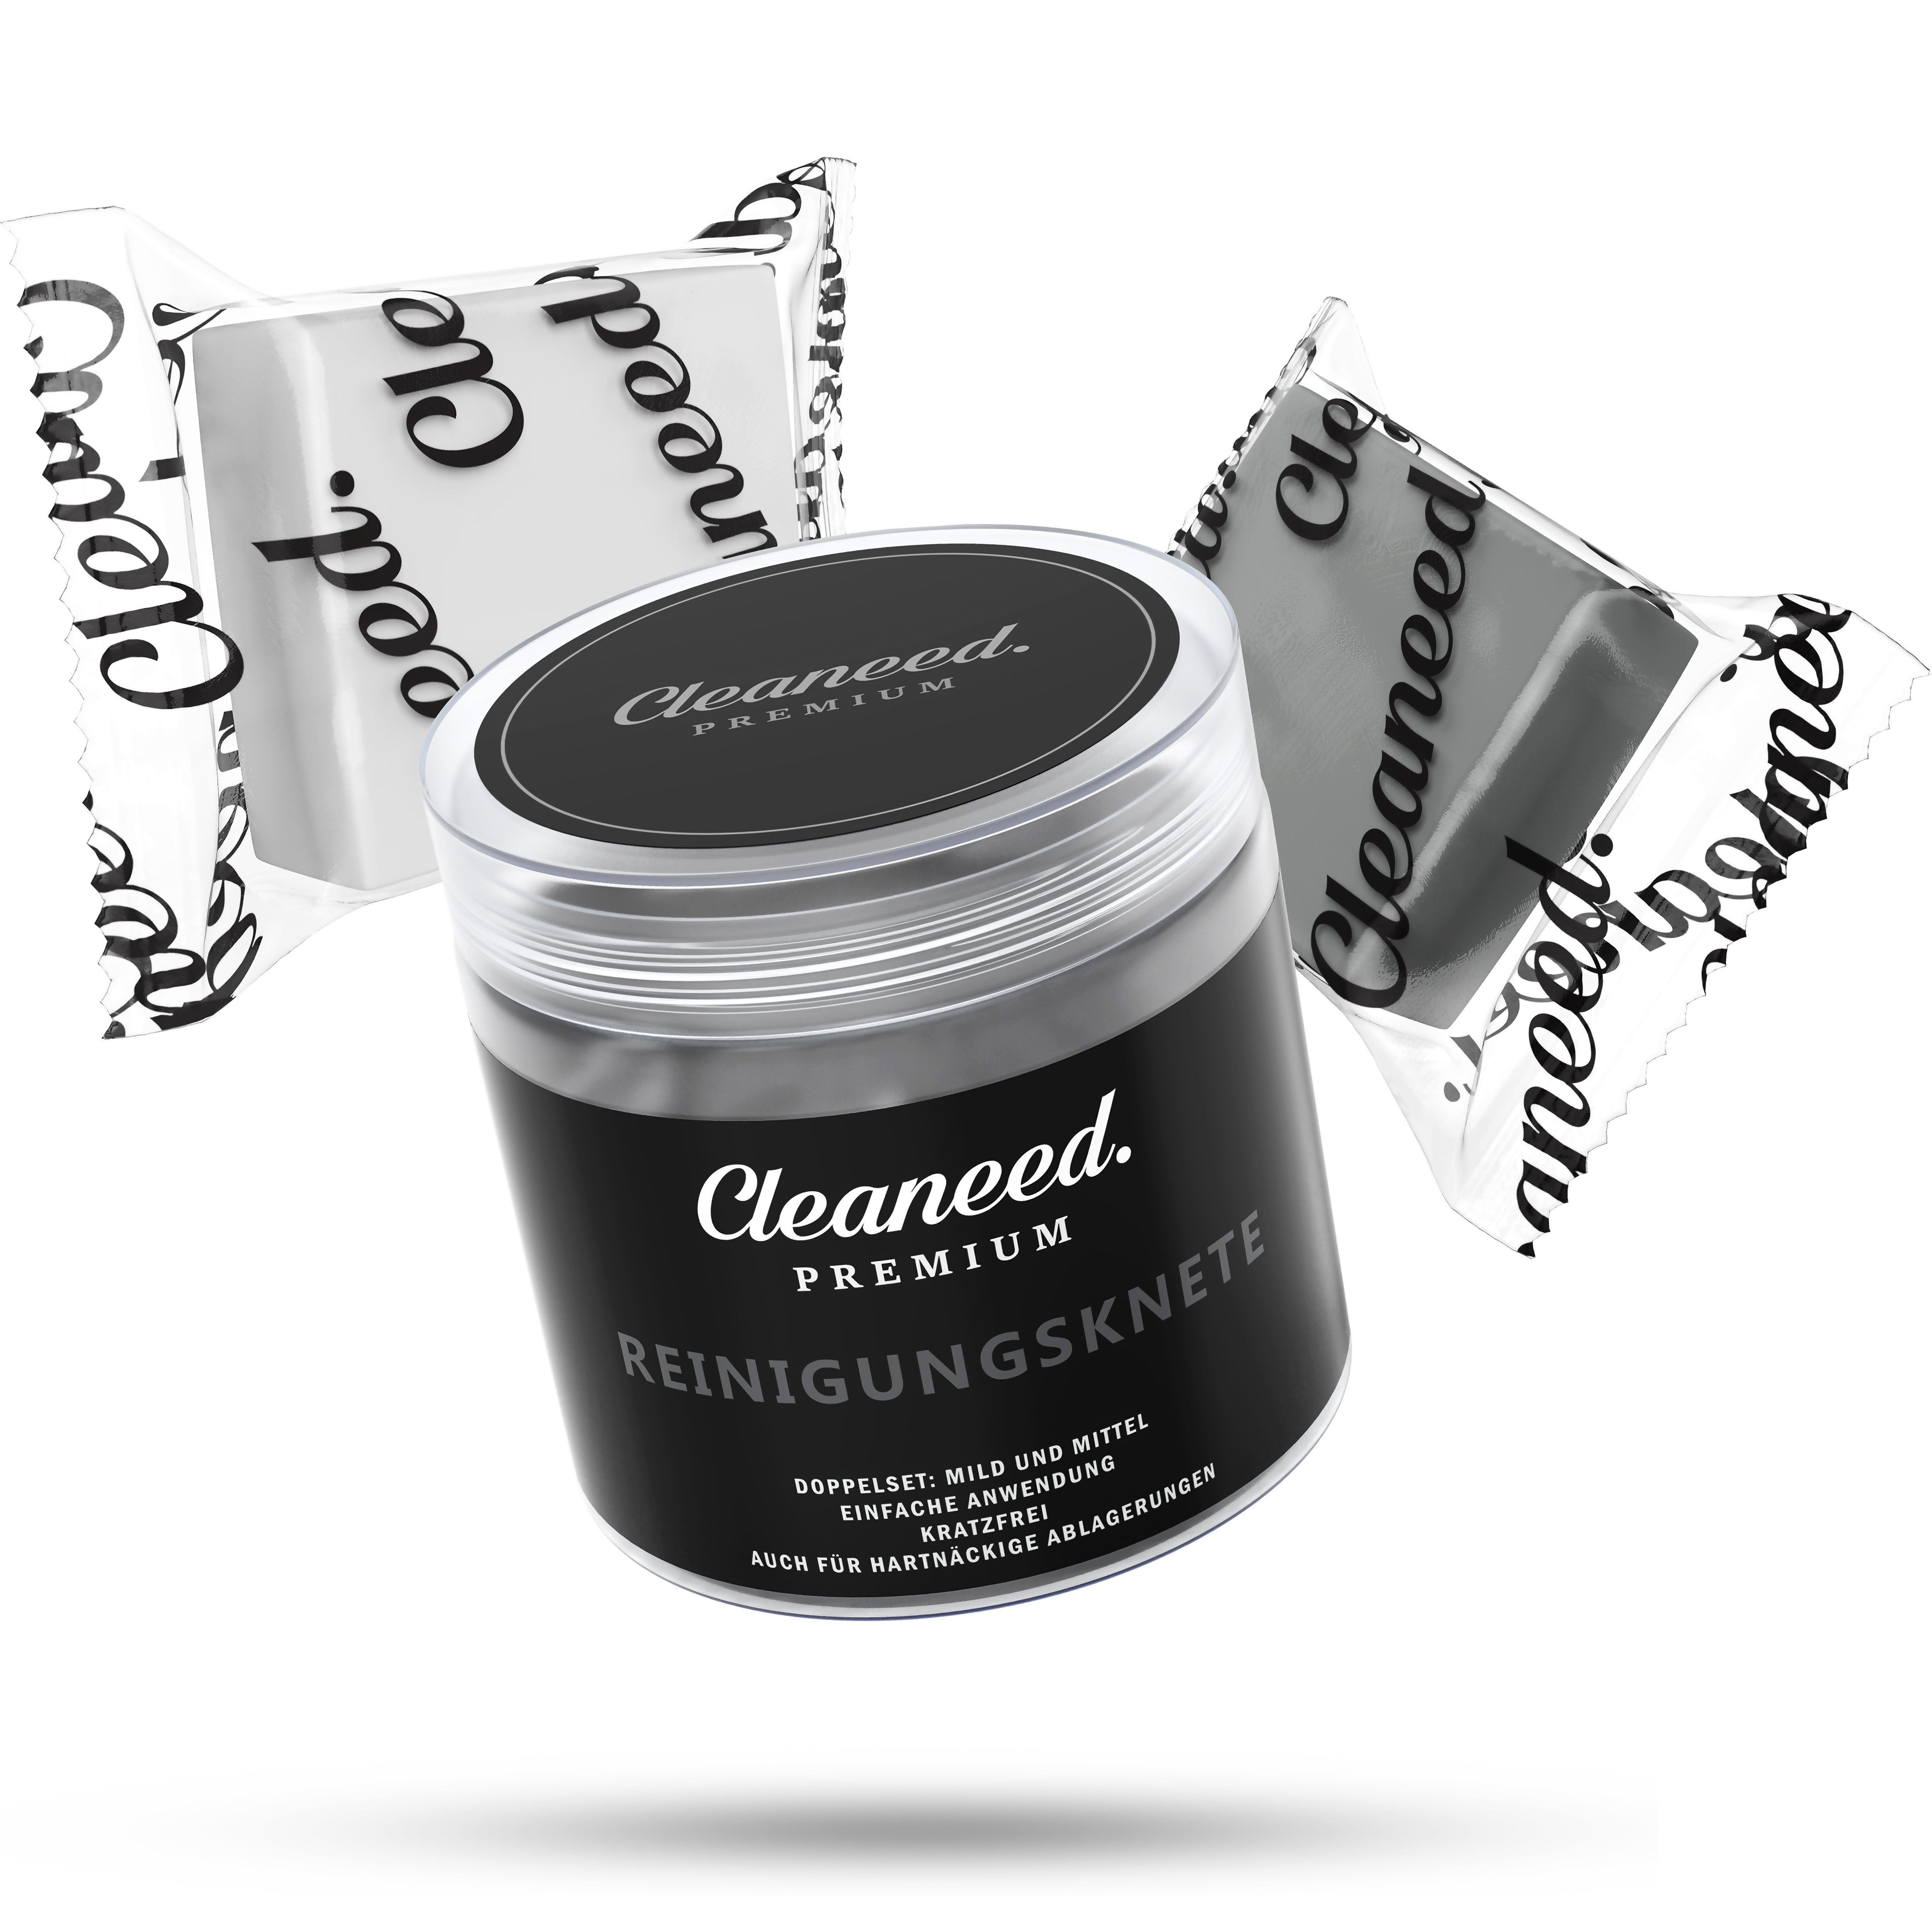 Cleaneed. - Premium Autoshampoo mit Wachs, Cleaneed™